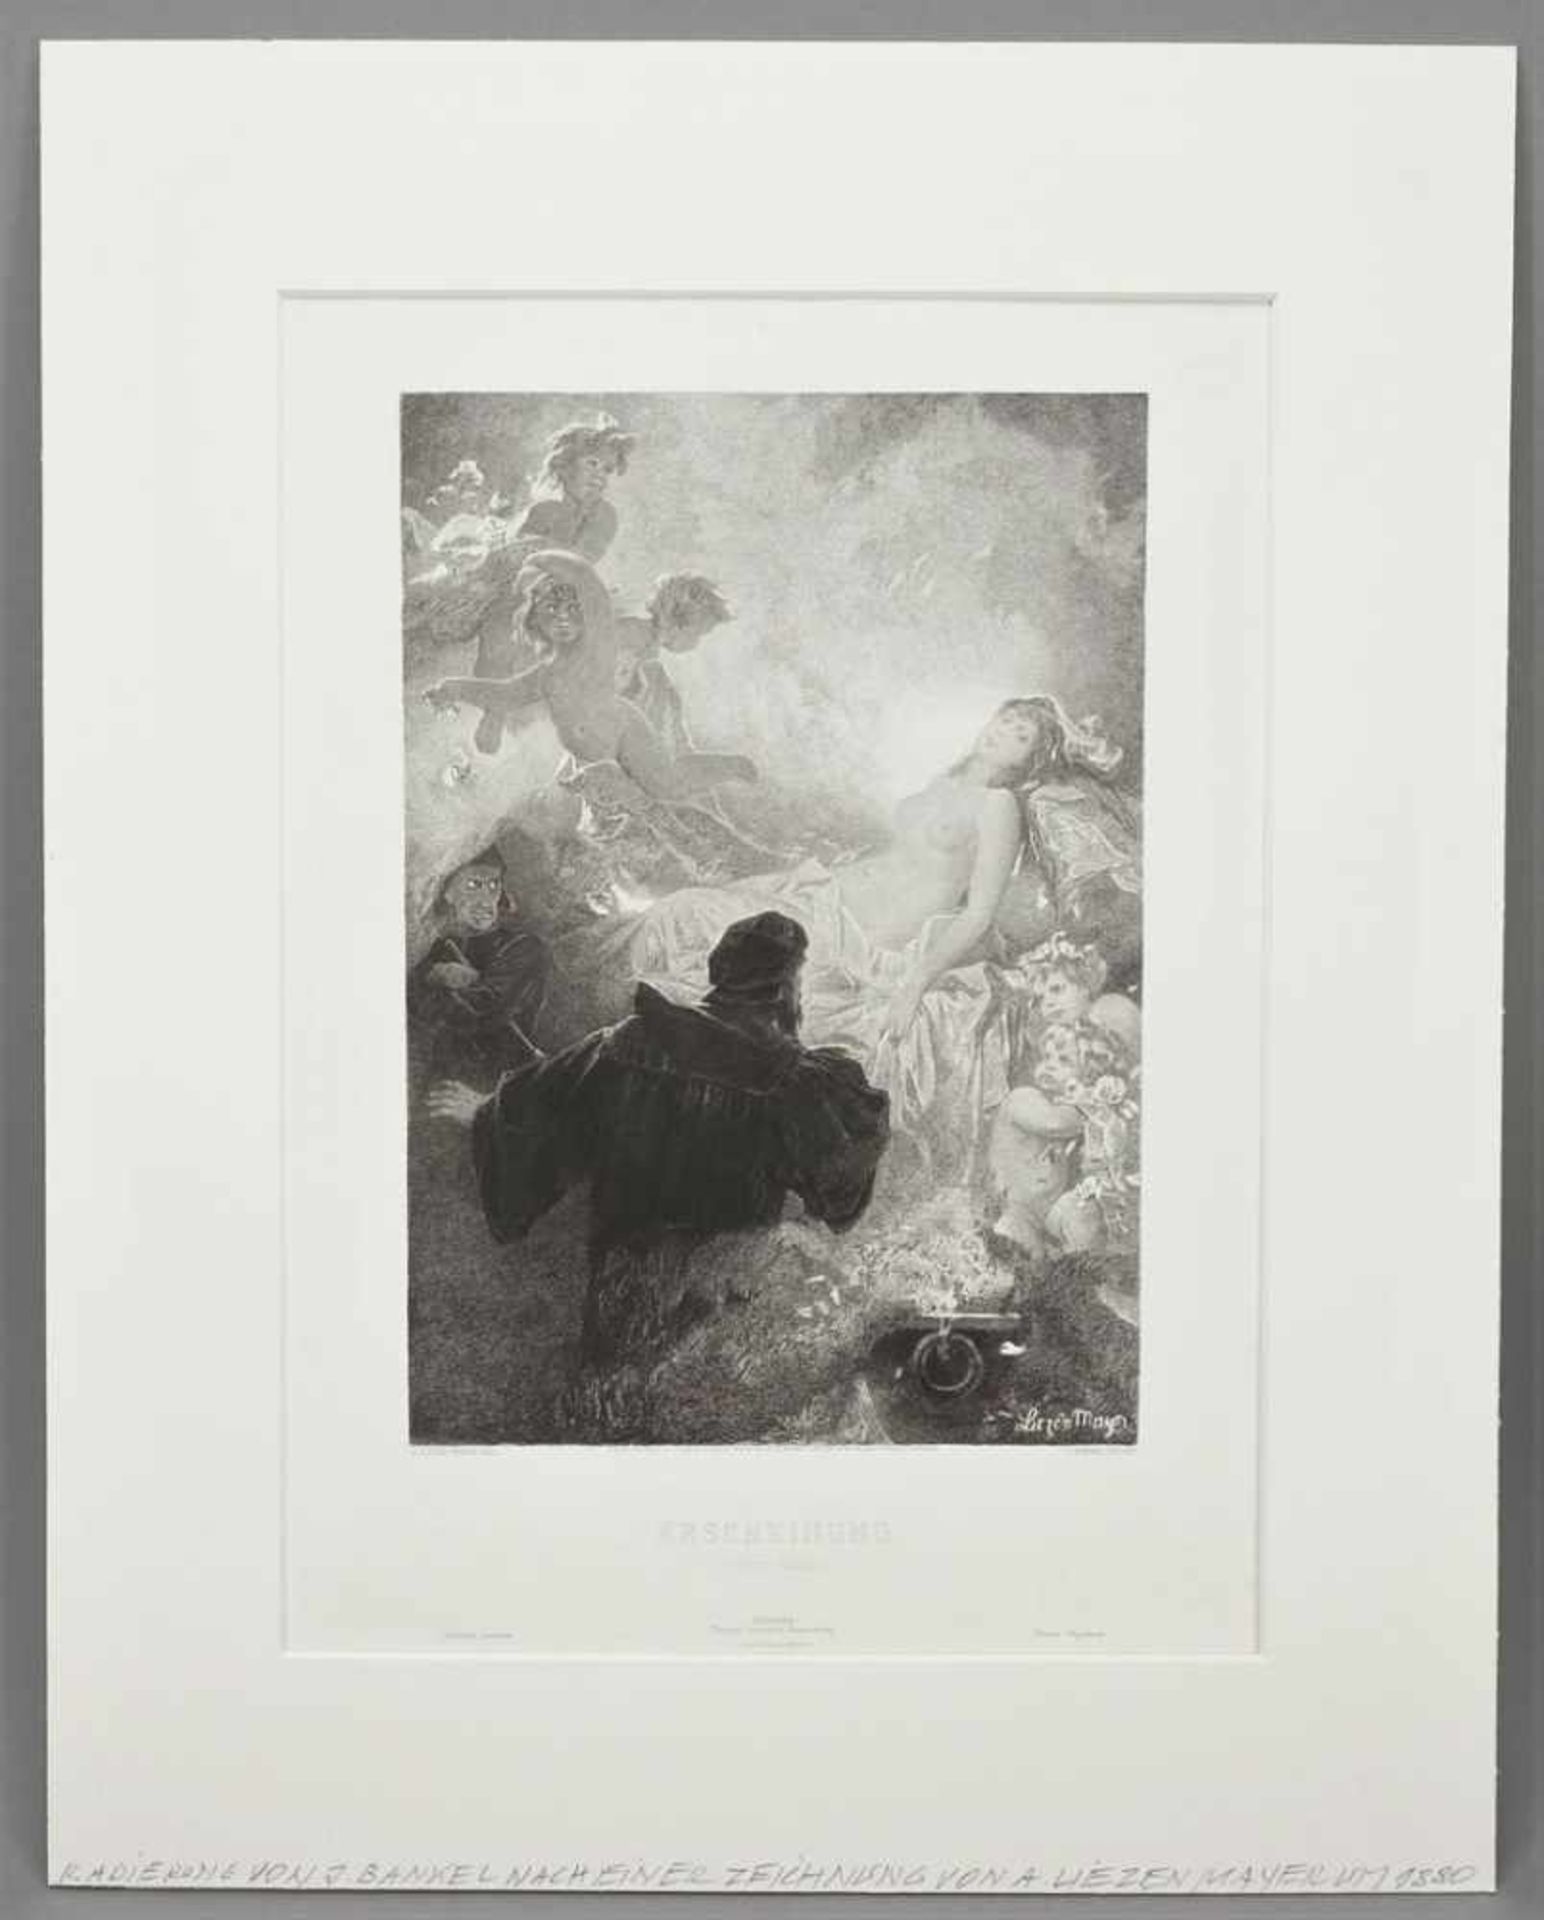 Alexander Liezen-Mayer, "Erscheinung. Hexenküche (Faust blickt in den Zauberspiegel)" - Image 2 of 4